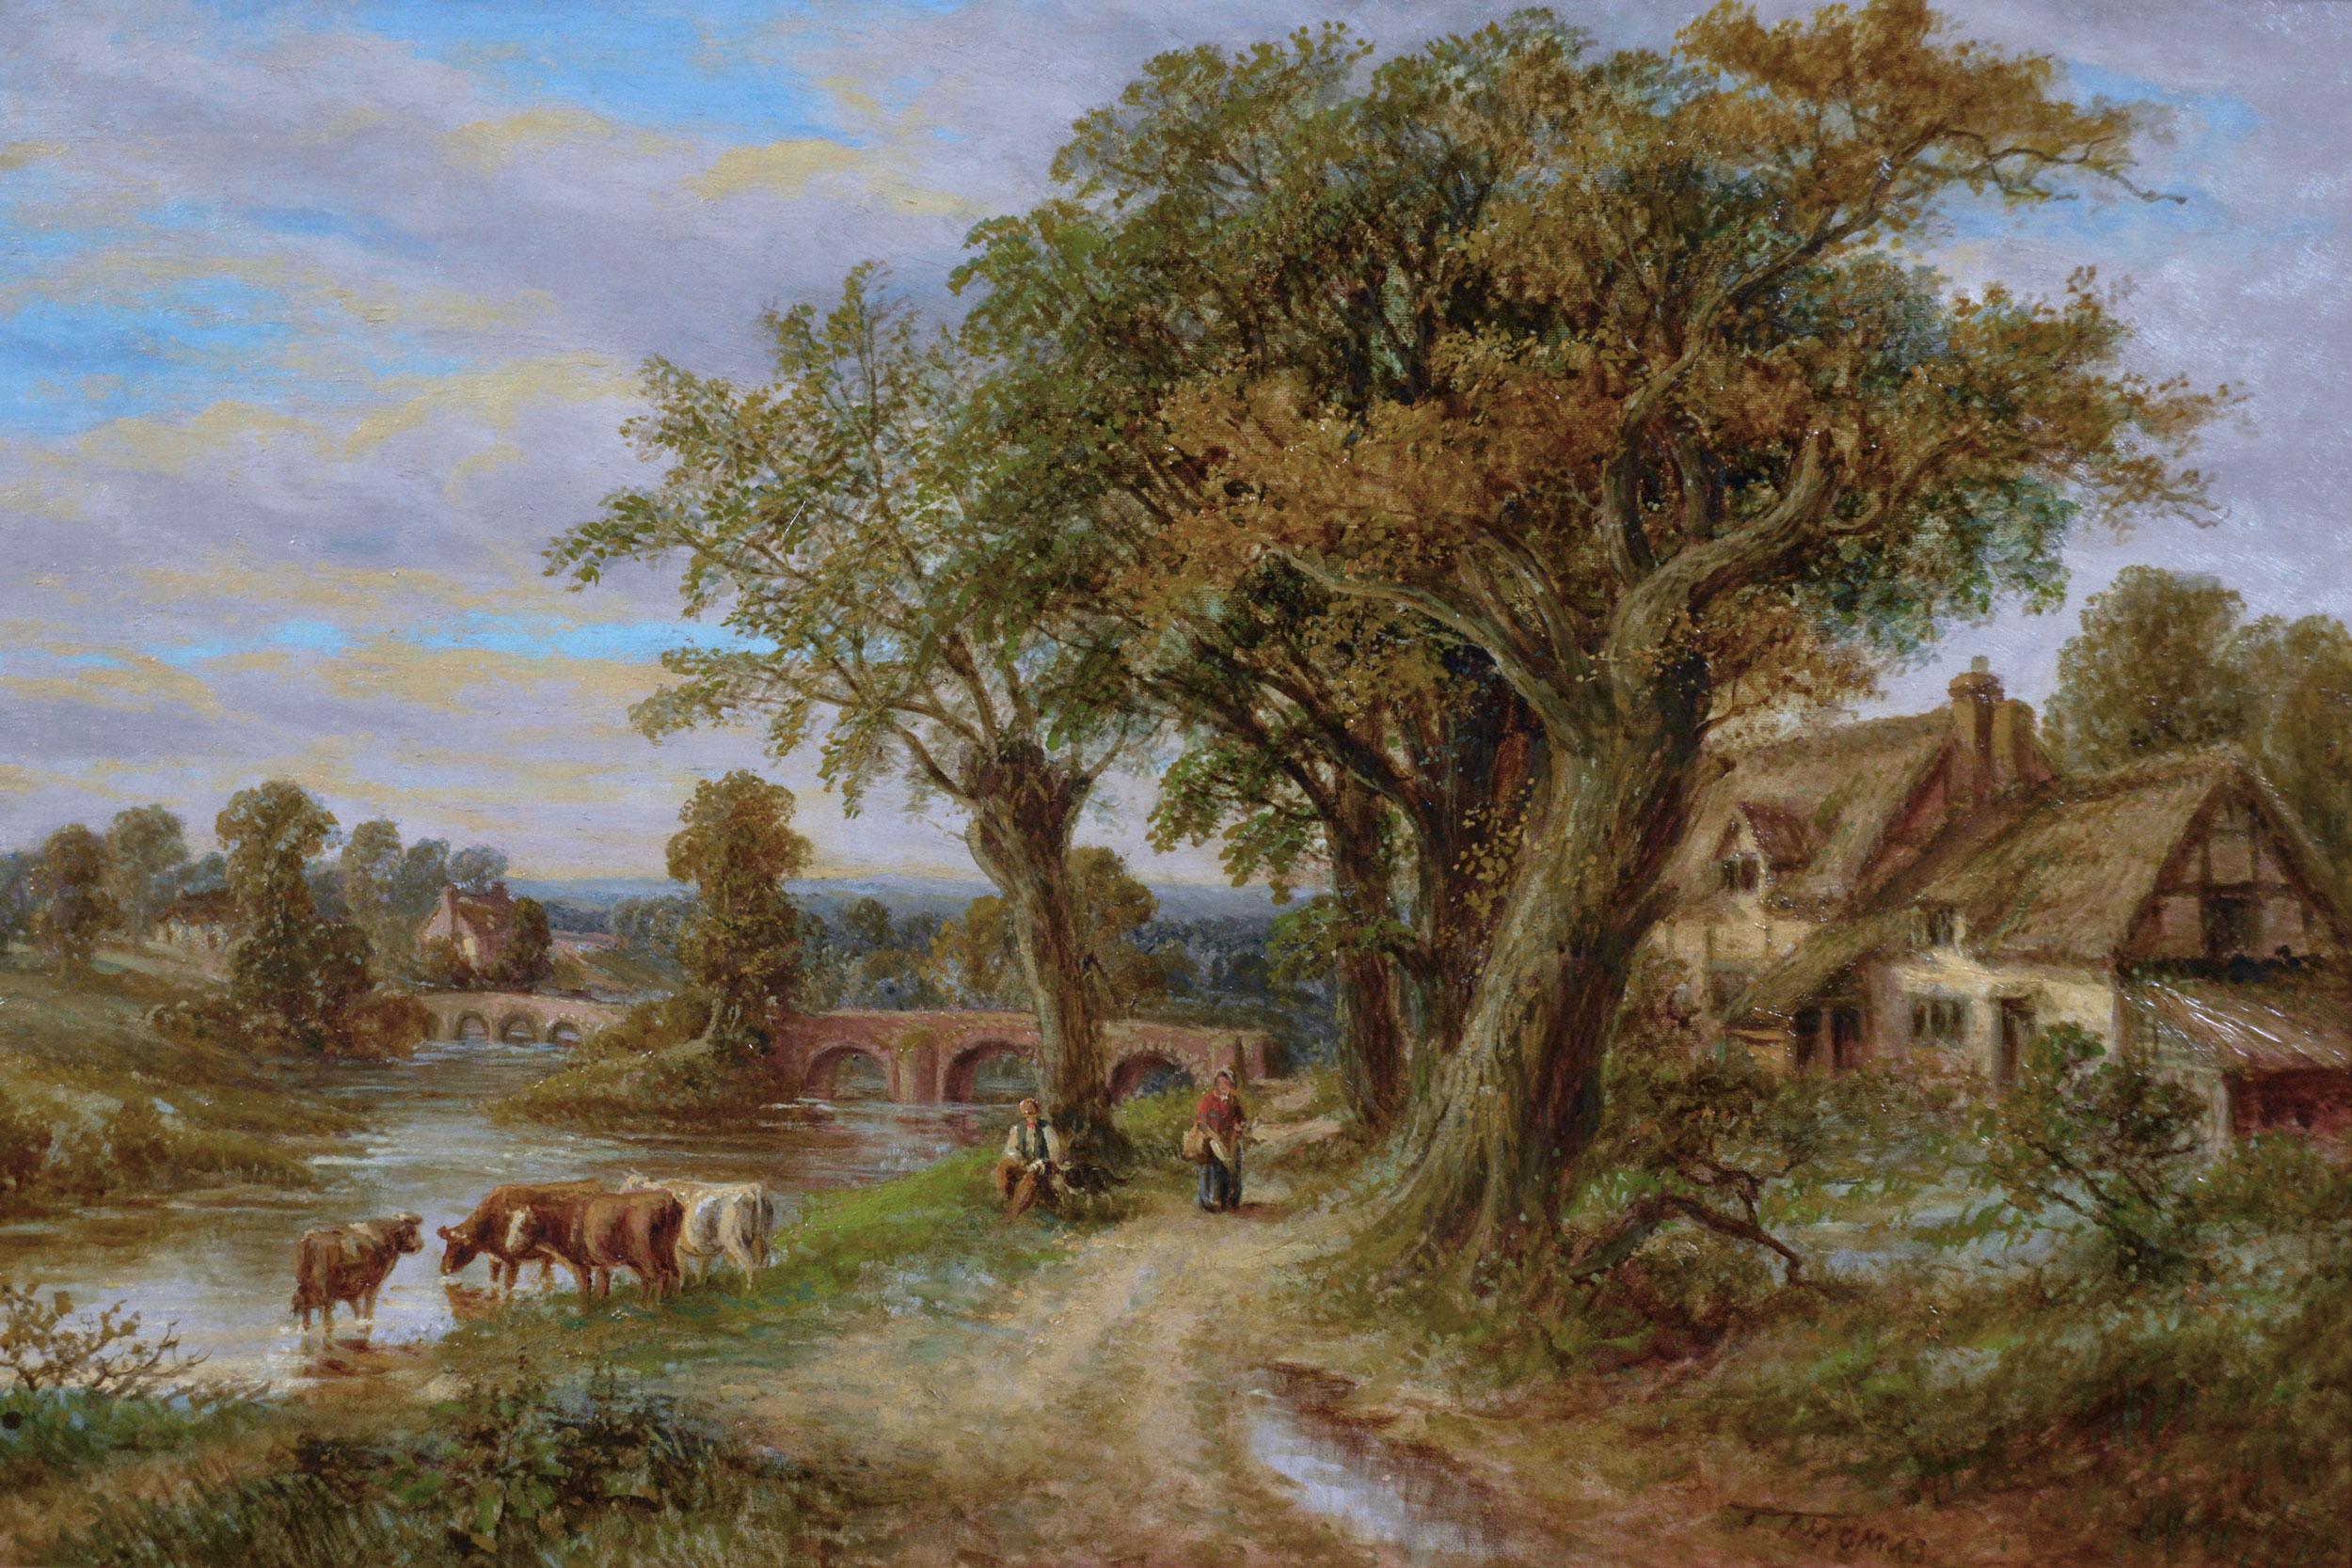 Peinture à l'huile de paysage du 19e siècle représentant des personnages avec du bétail près d'une rivière de campagne - Painting de Thomas Thomas